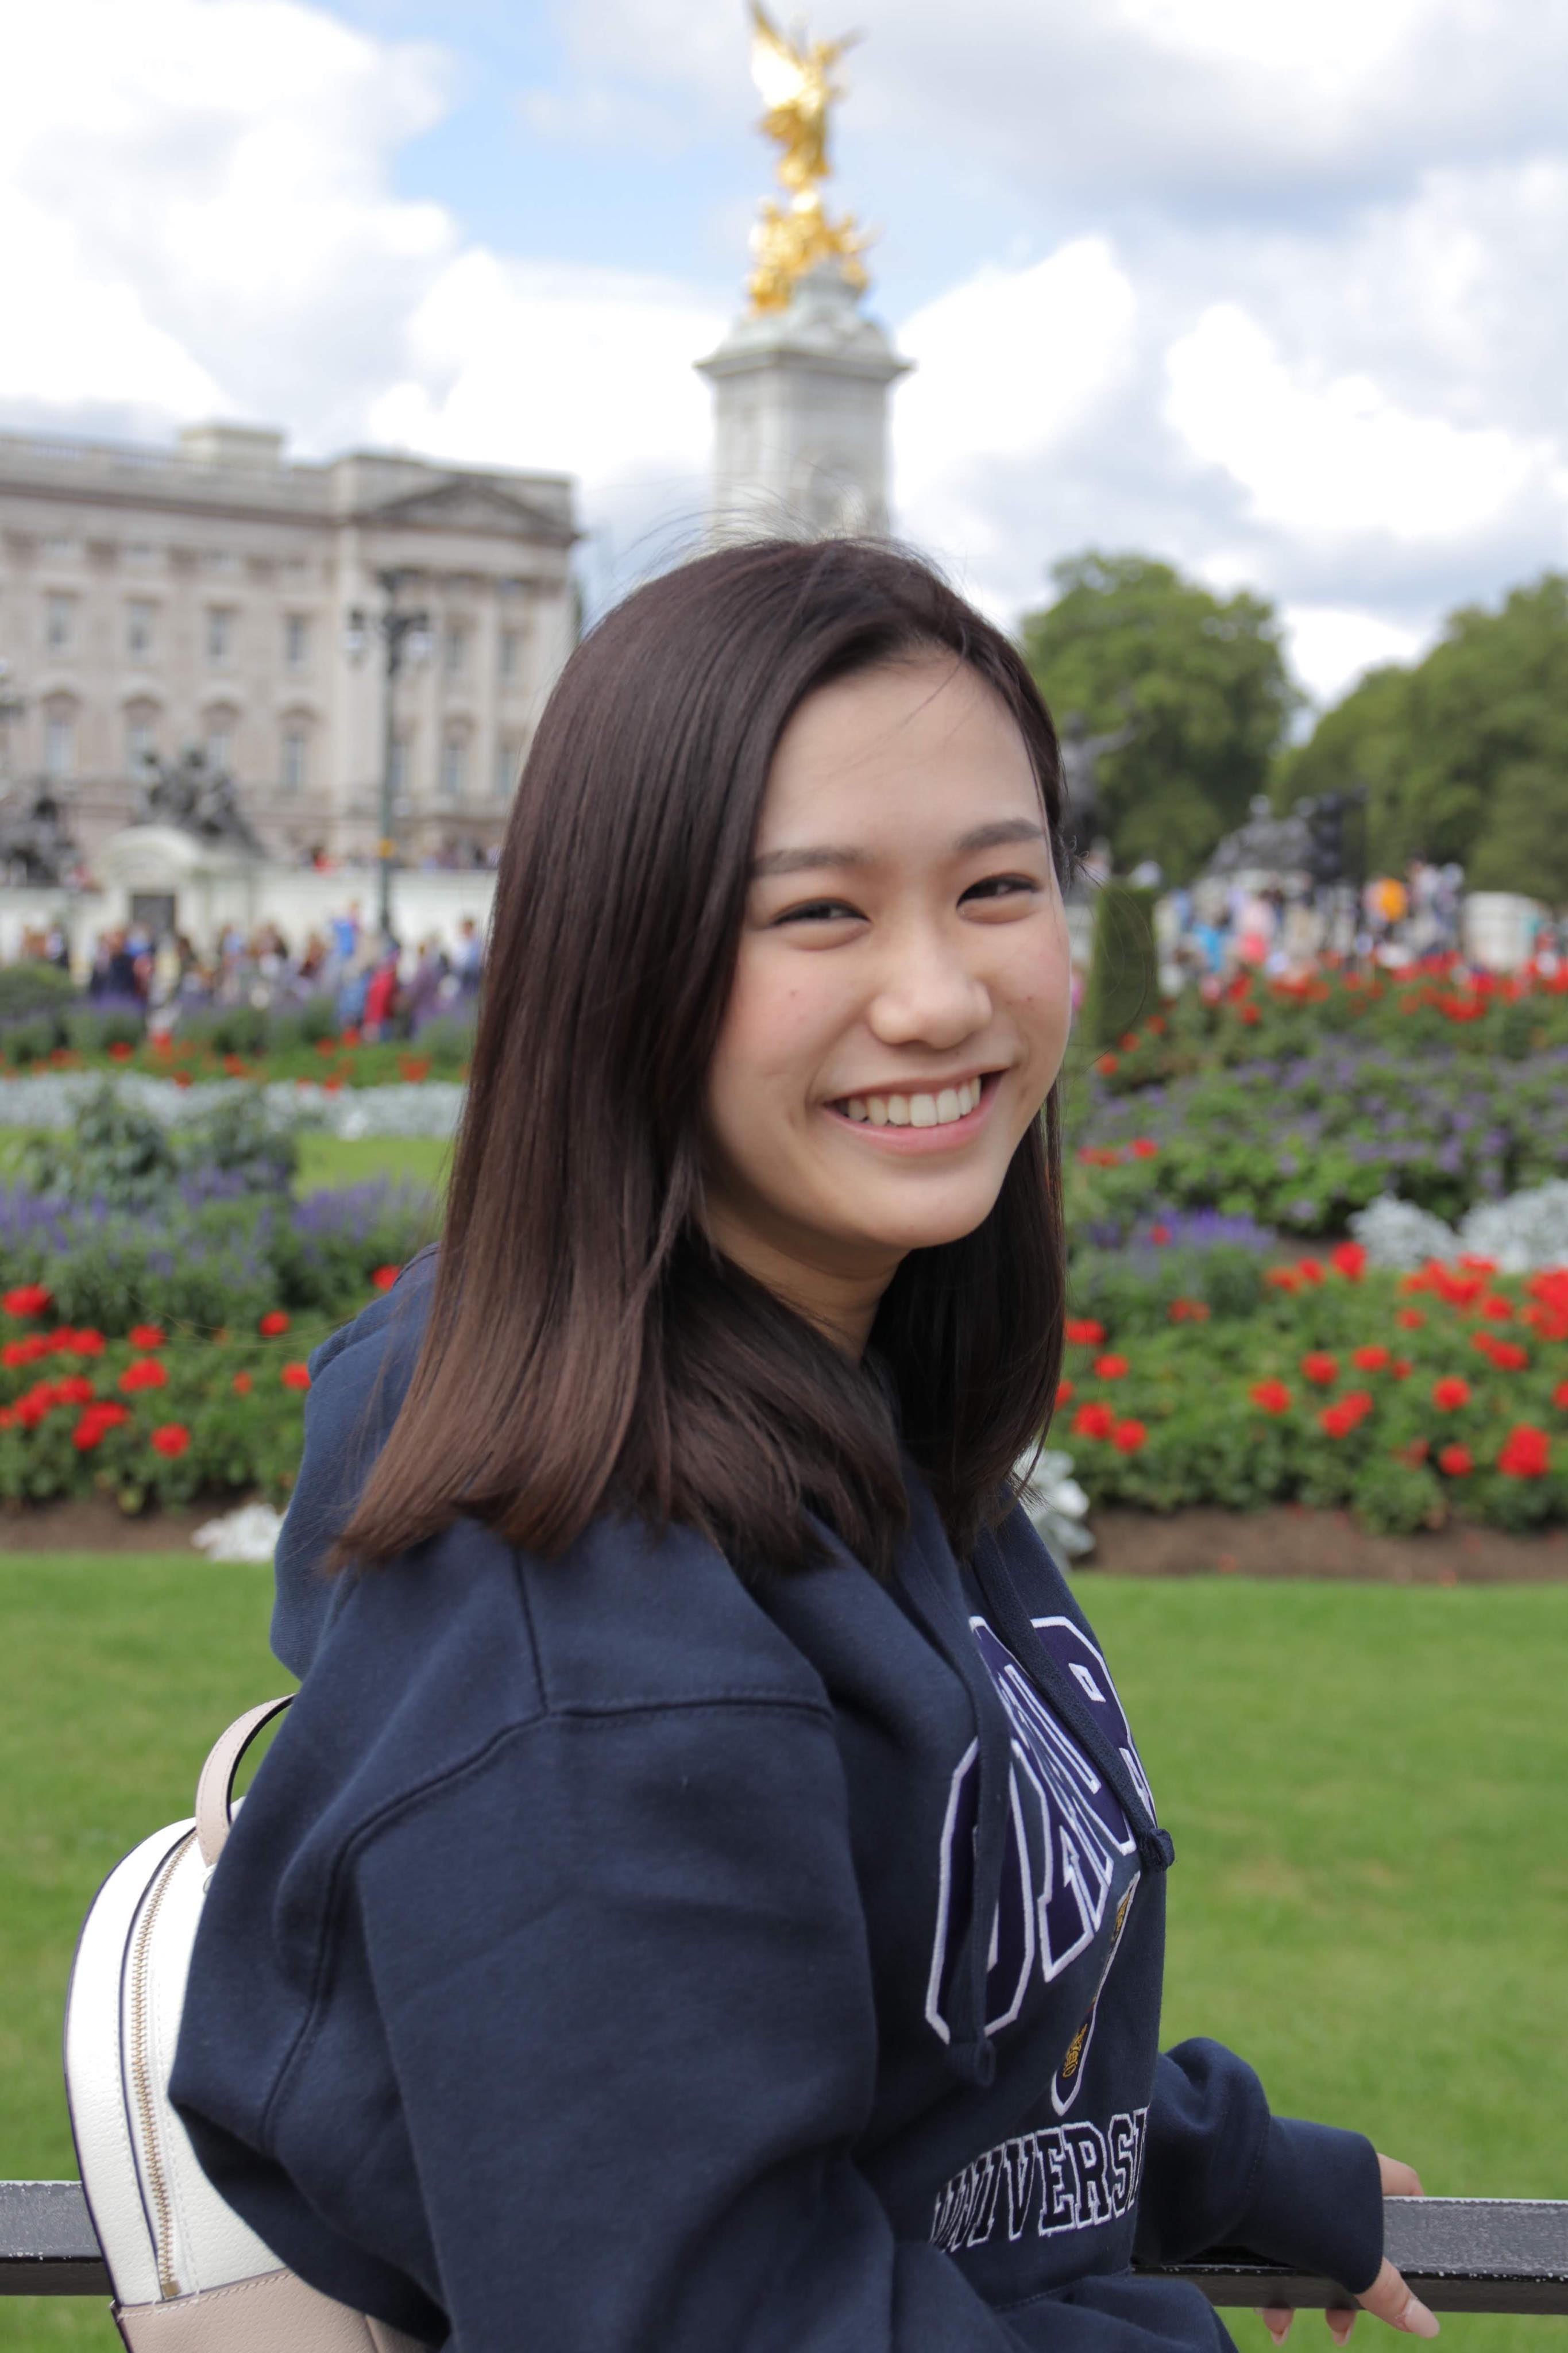 ニート兼起業家 18歳で会社を設立した女性 冨樫真凜さんの夢とは その１ 大阪市女性活躍促進情報発信事業